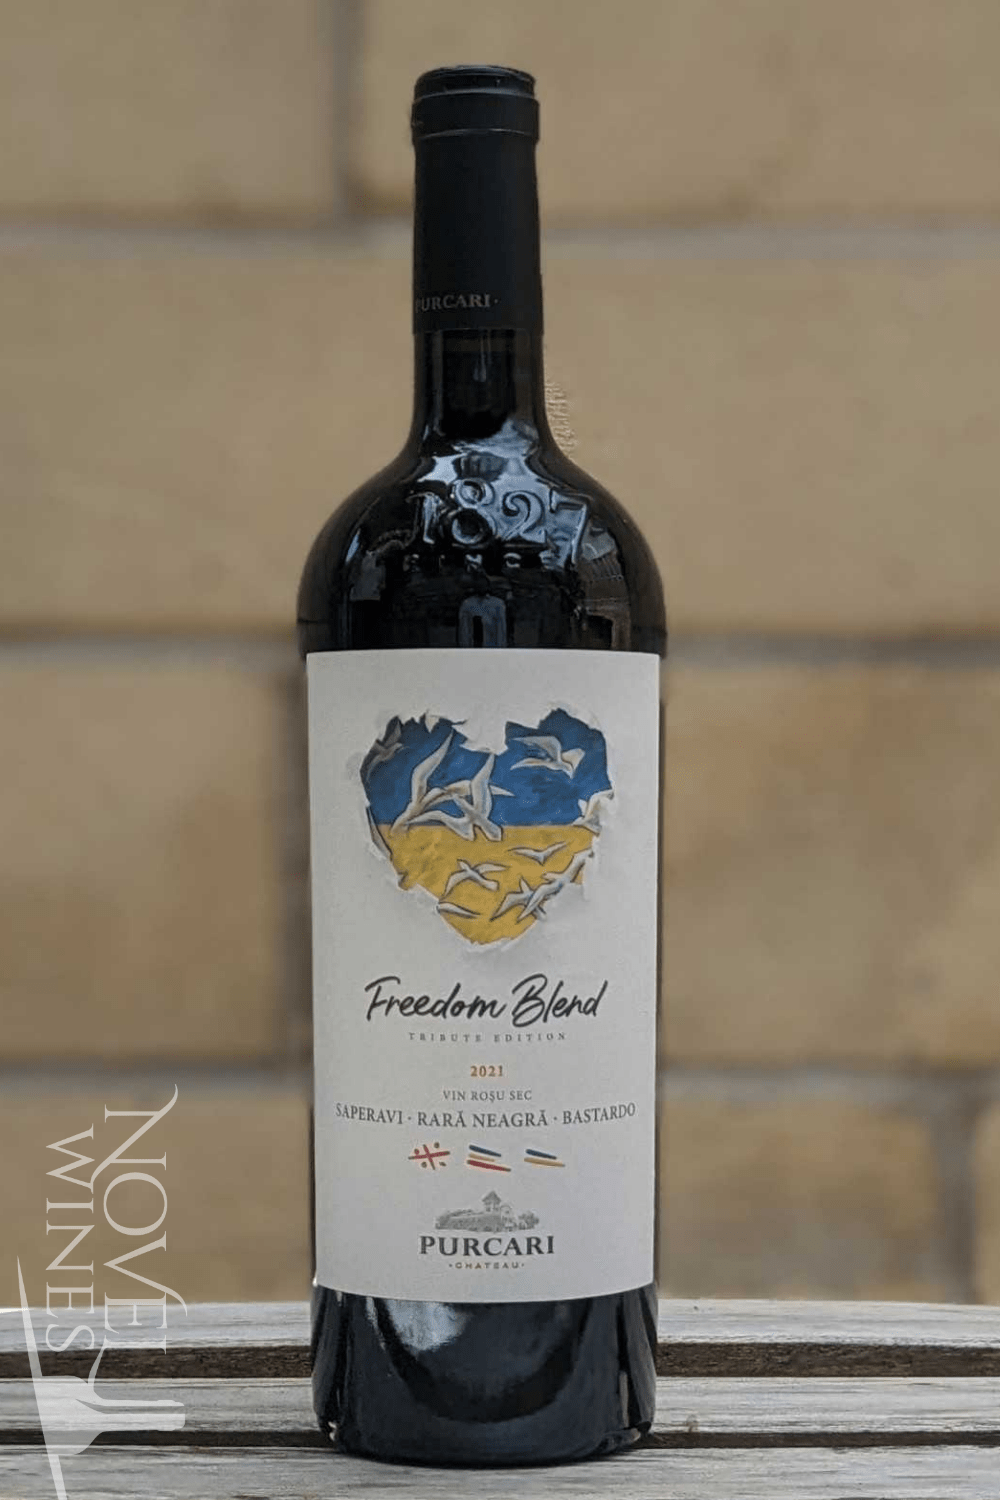 Chateau Purcari Red Wine Chateau Purcari Limited Edition Freedom Blend 2019, Moldova